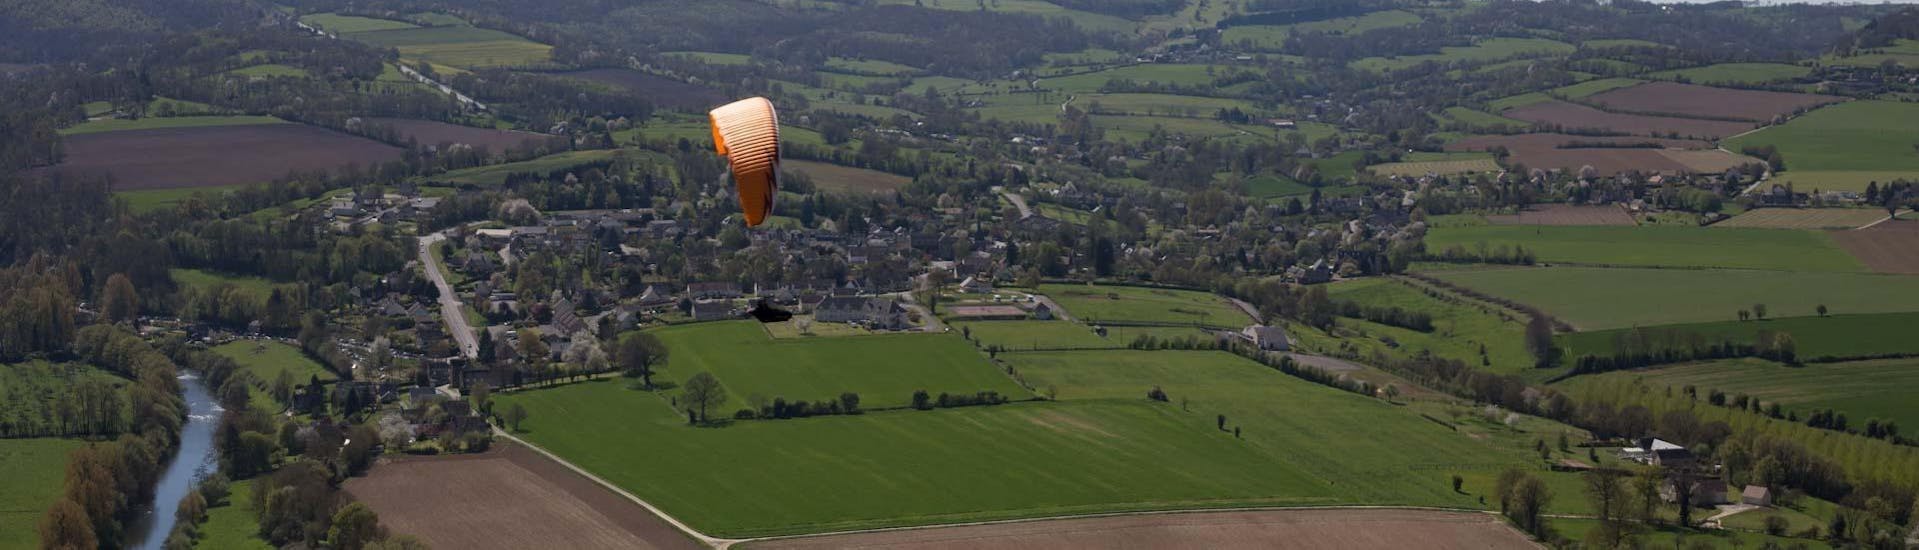 tandem-paragliding-mont-saint-michel-normandie-hero1